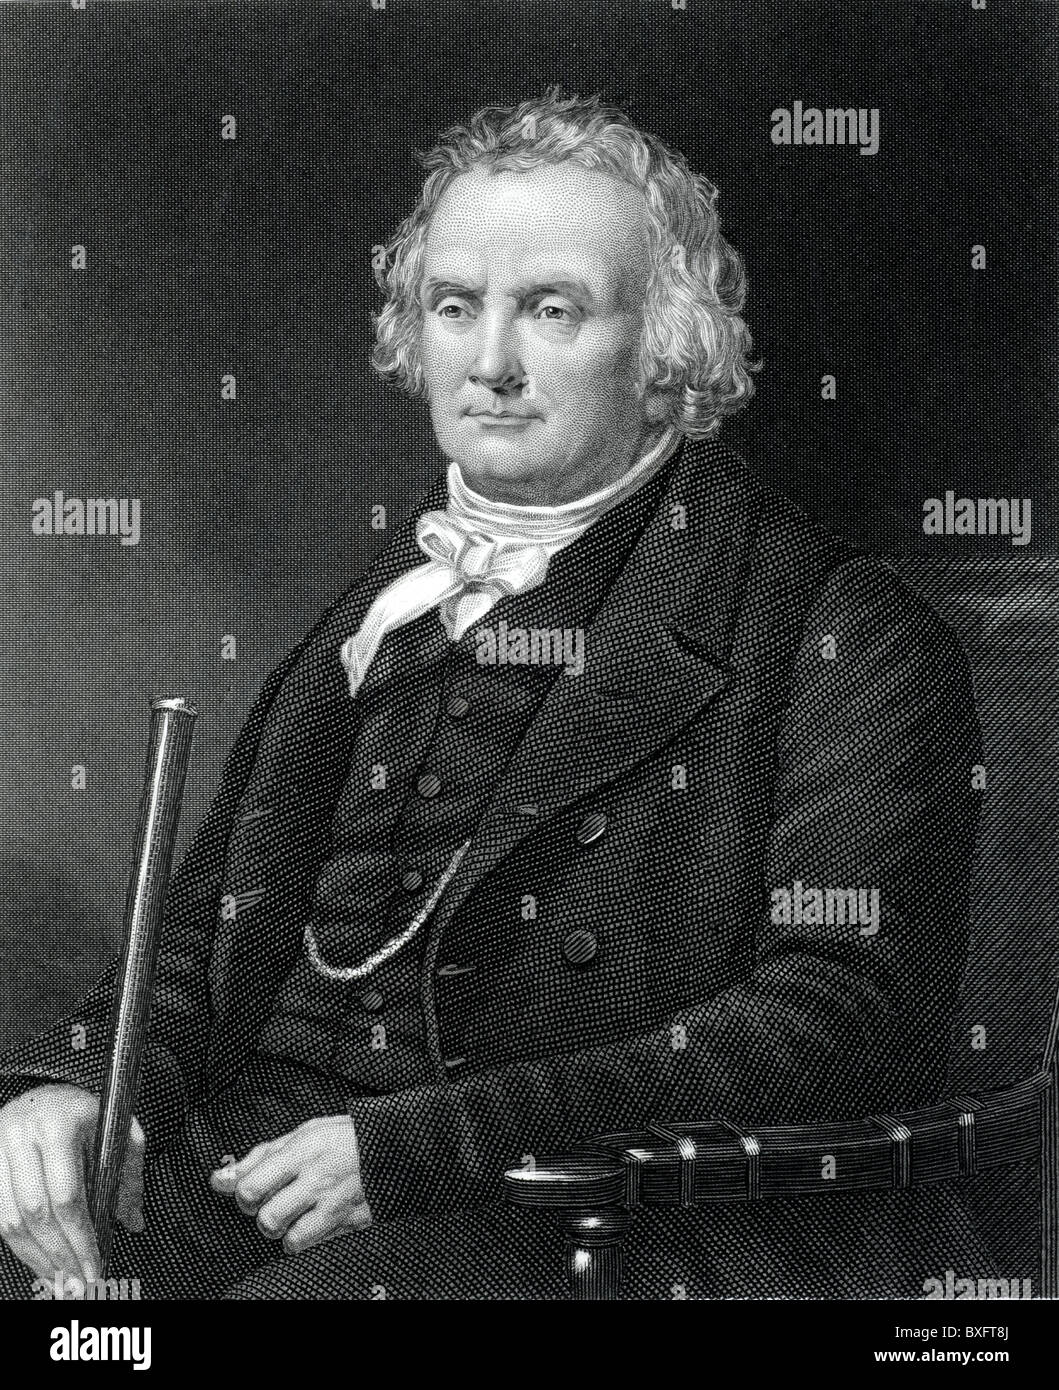 Ritratto del reverendo Thomas Chalmers (1780-1847) matematico scozzese, economista e leader della Chiesa libera di Scozia (c19 incisione) Illustrazione o incisione d'epoca Foto Stock